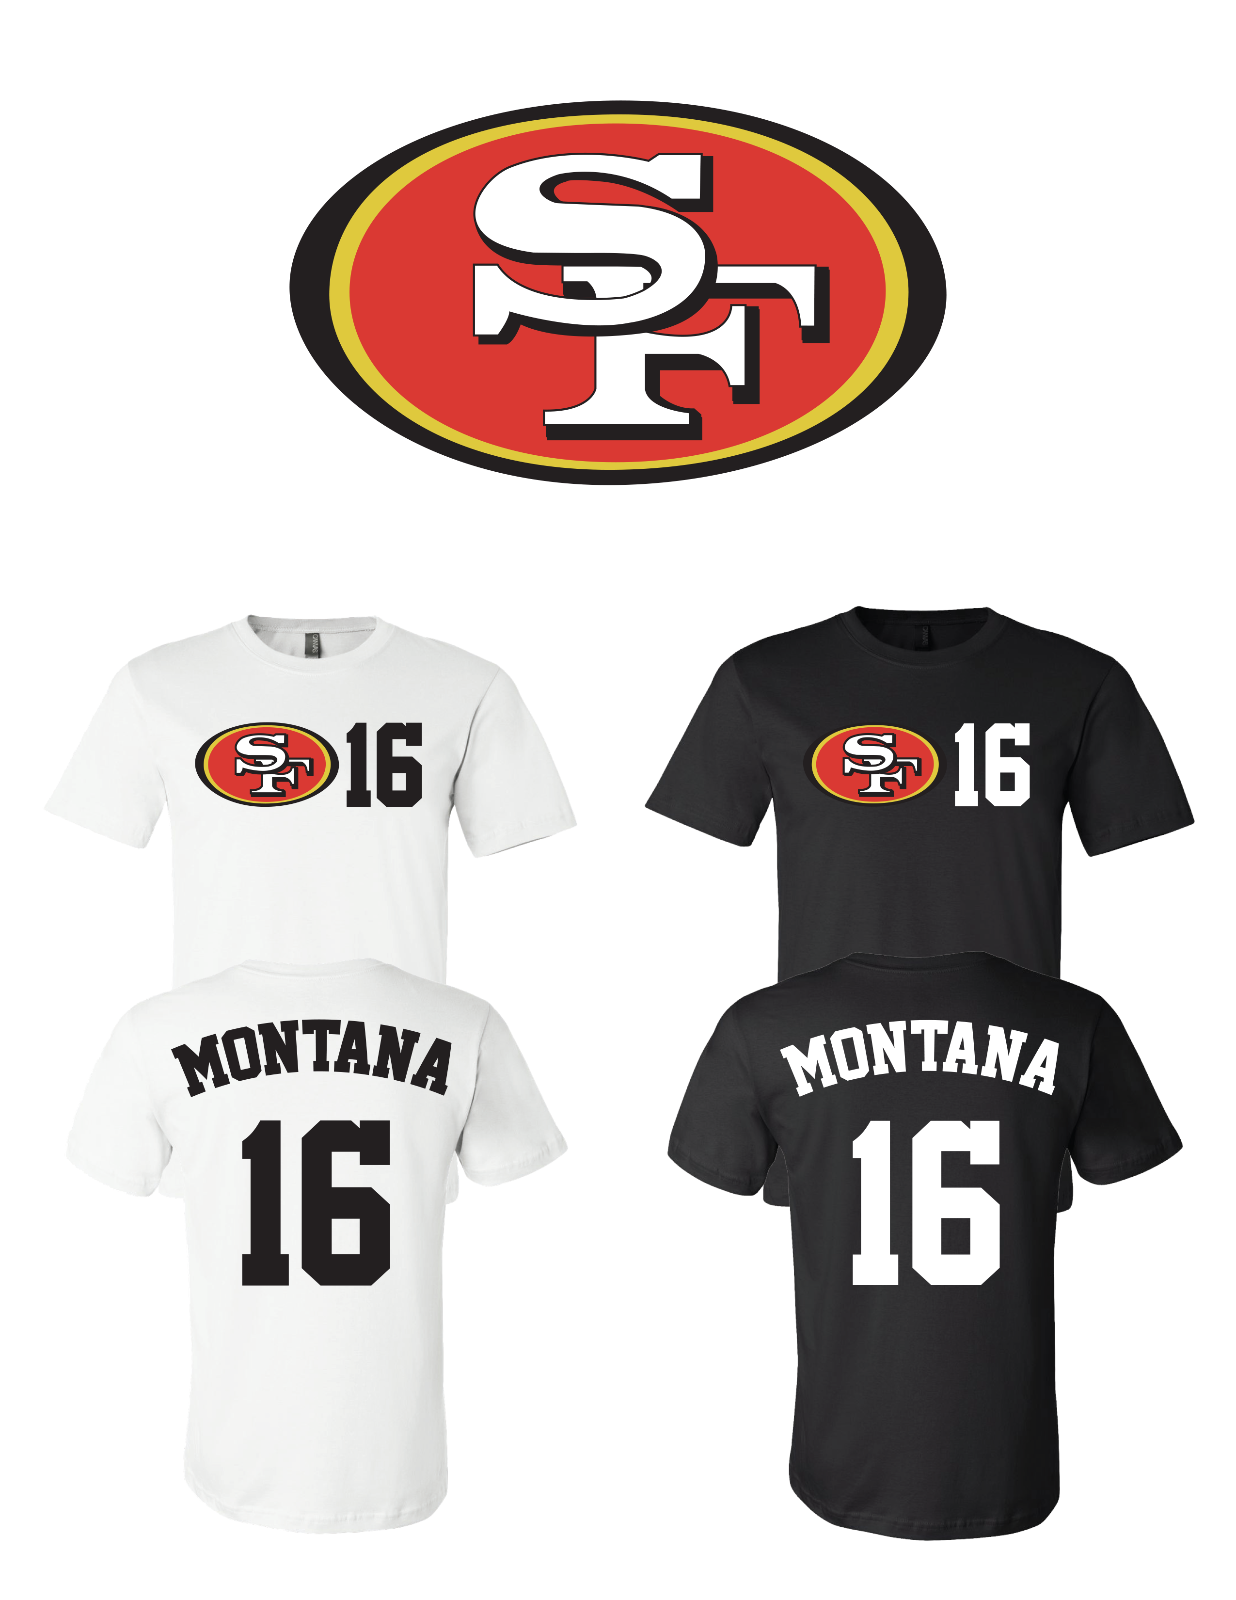 Joe Montana #16 San Francisco 49ers Jersey player shirt